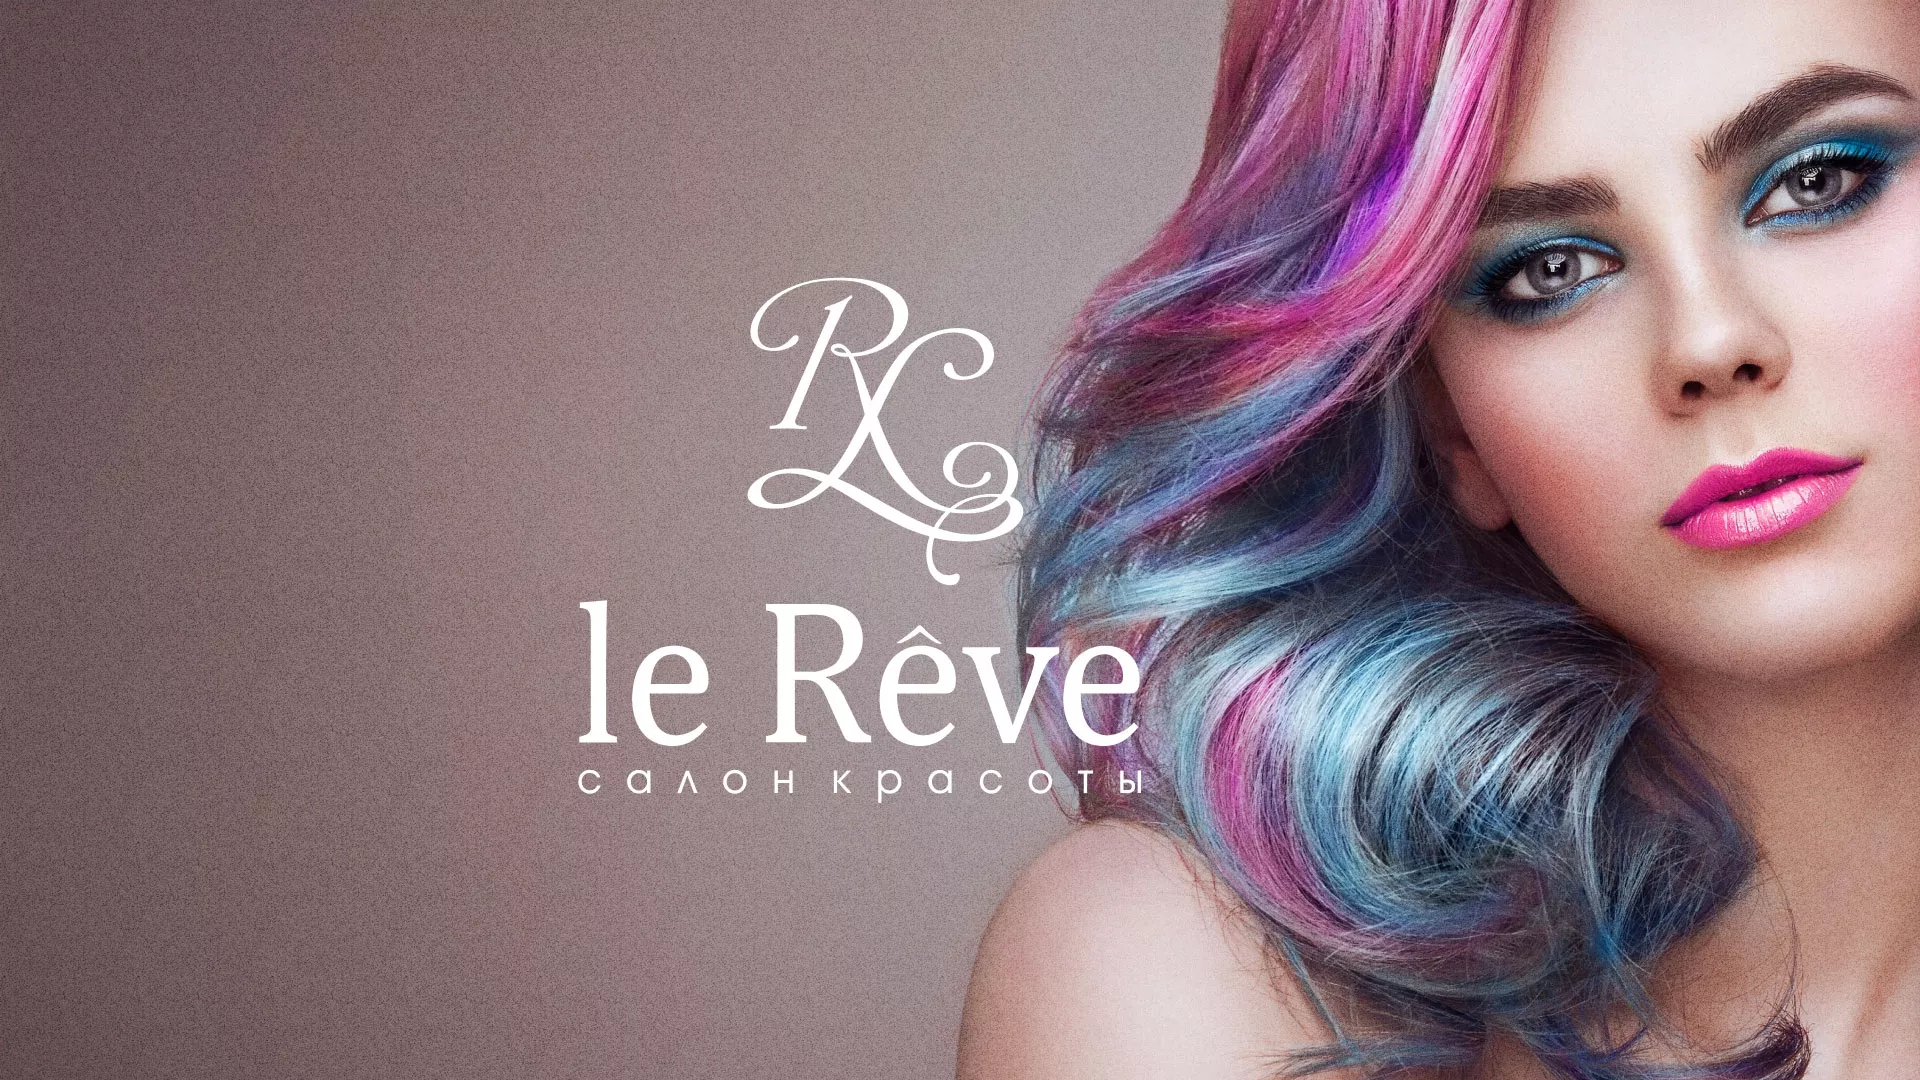 Создание сайта для салона красоты «Le Reve» в Гусеве